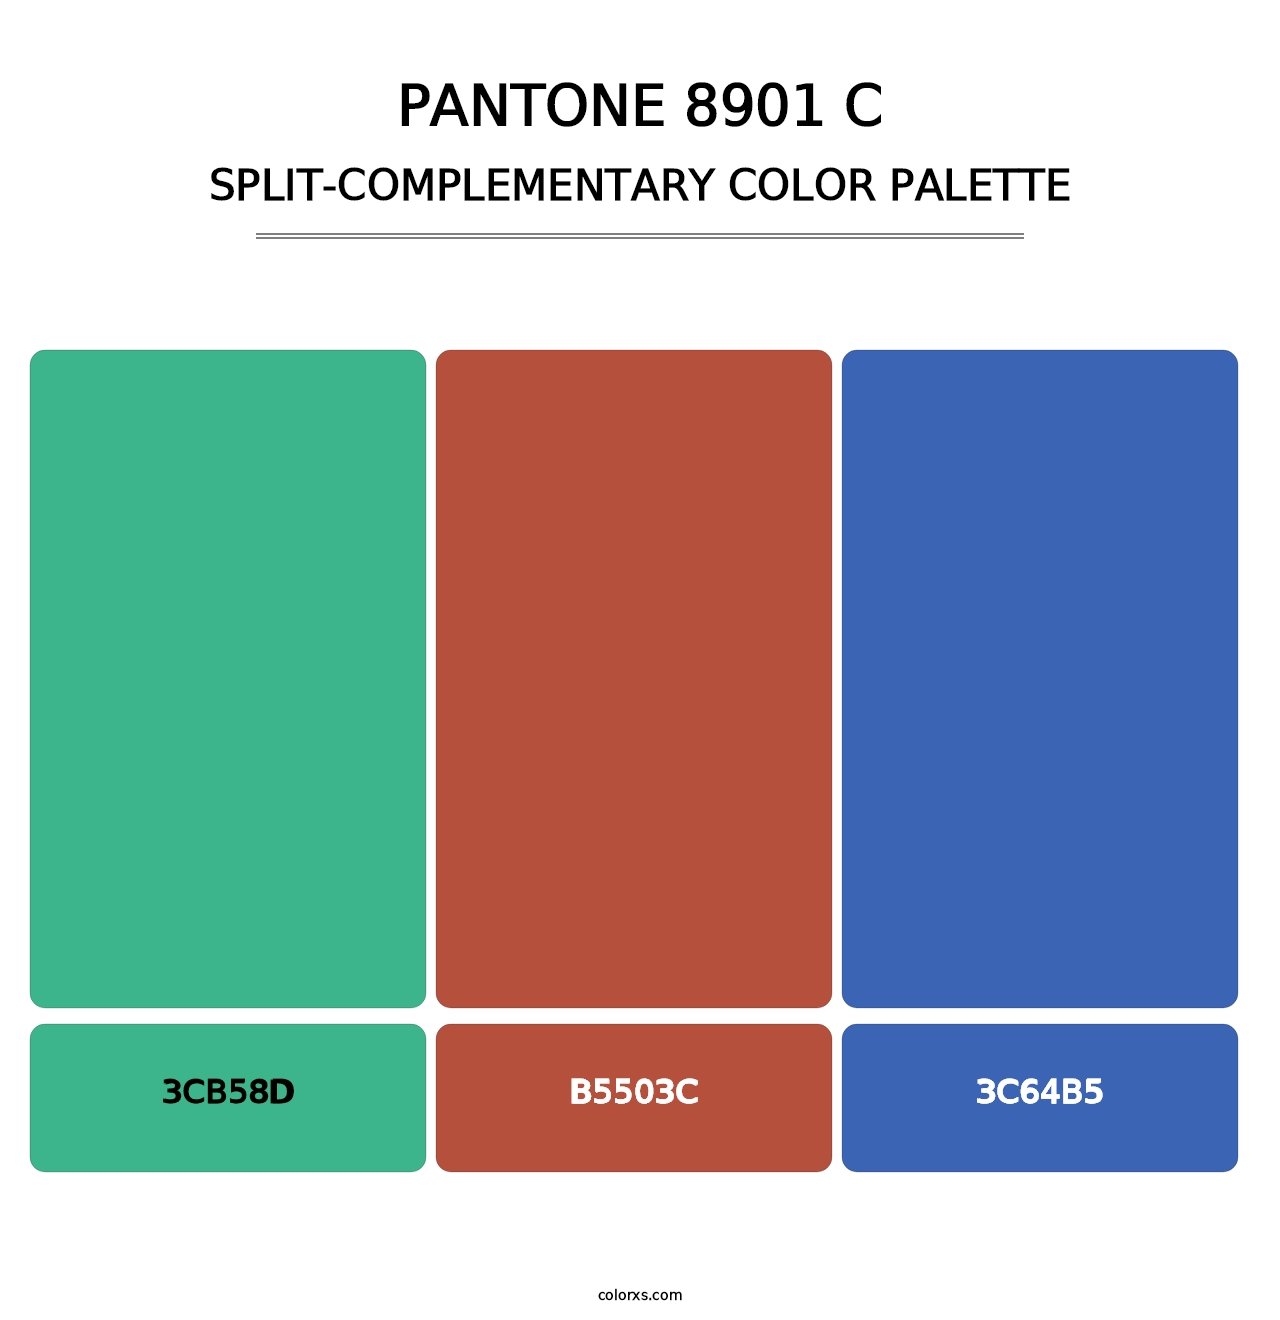 PANTONE 8901 C - Split-Complementary Color Palette